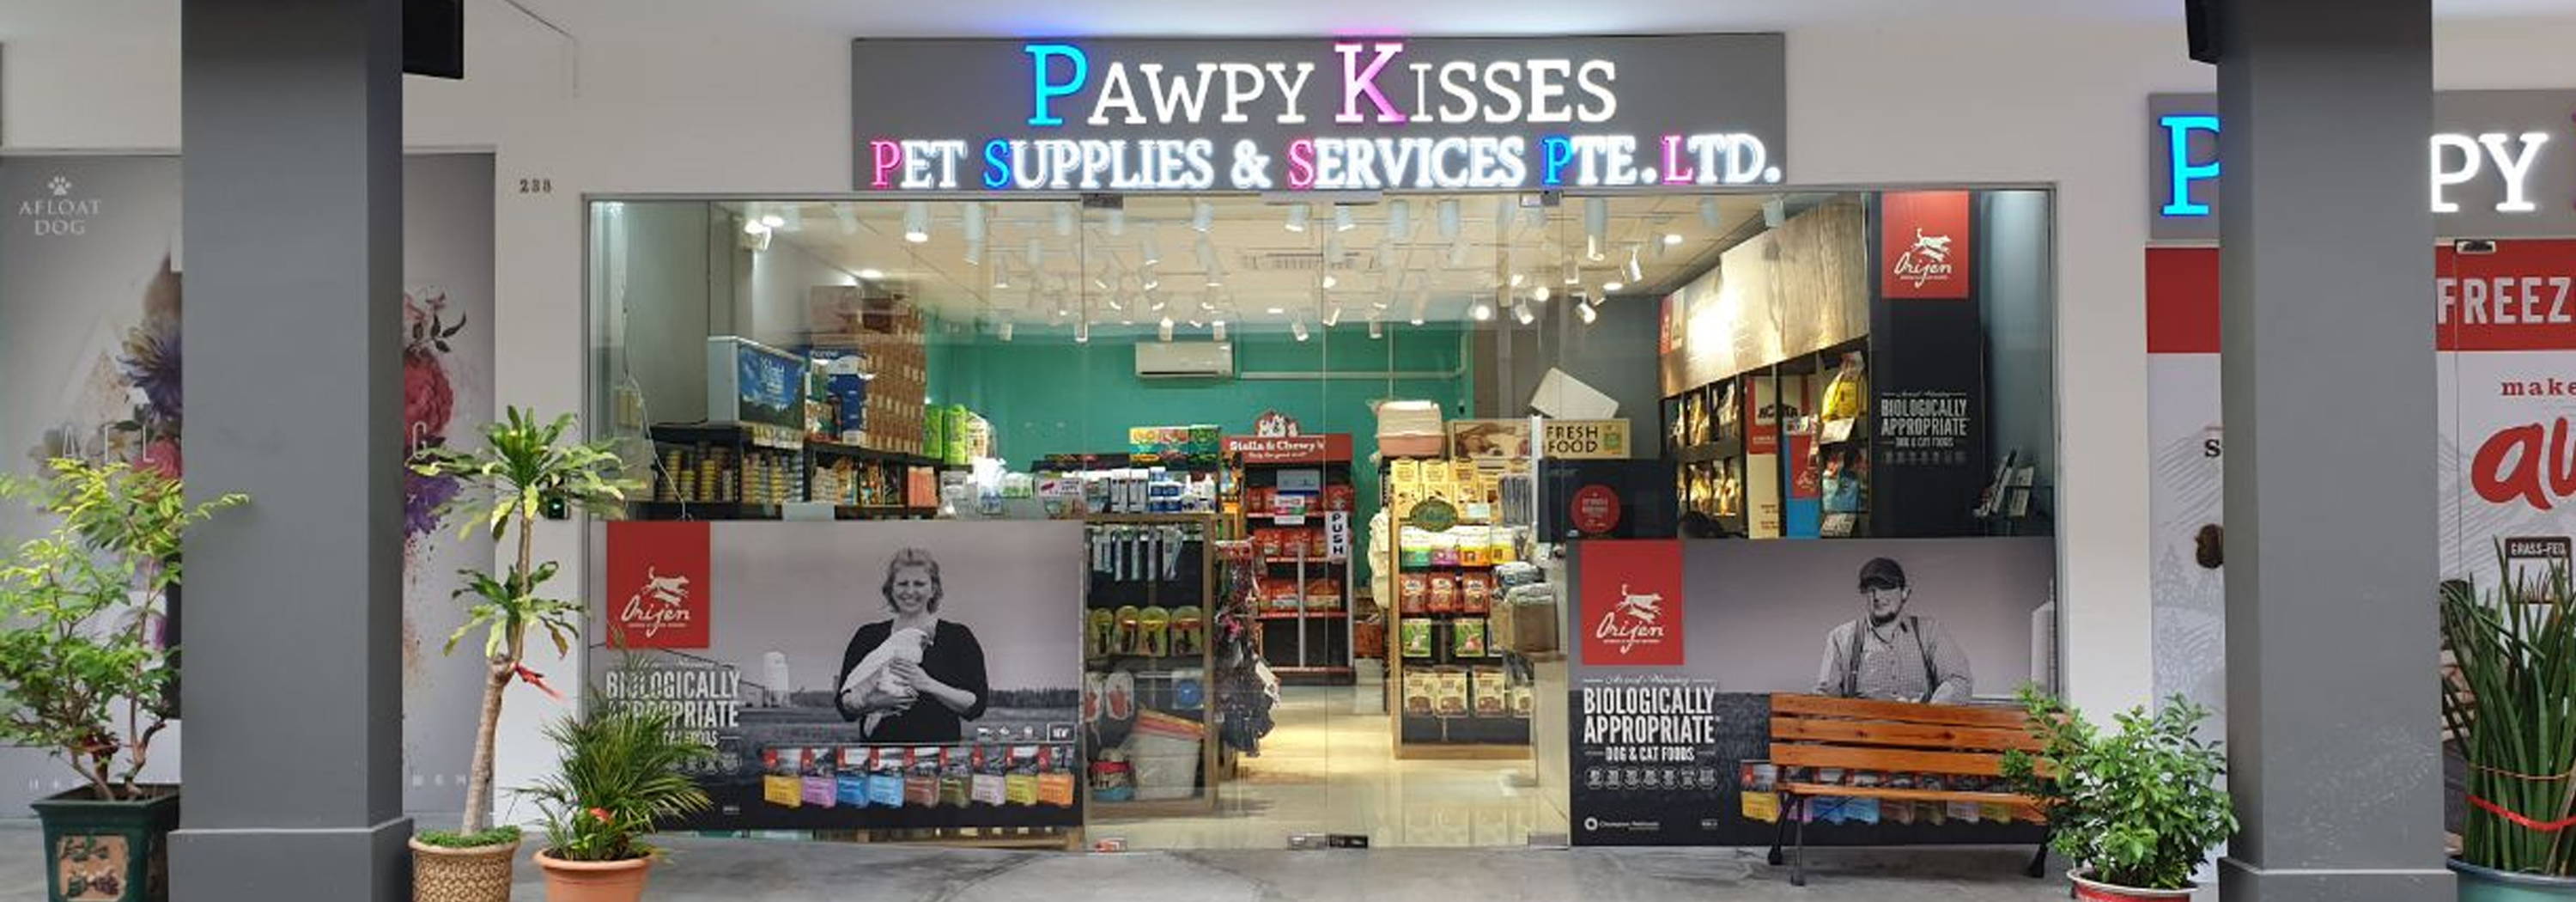 Pawpy Kisses online pet shop contact us page.